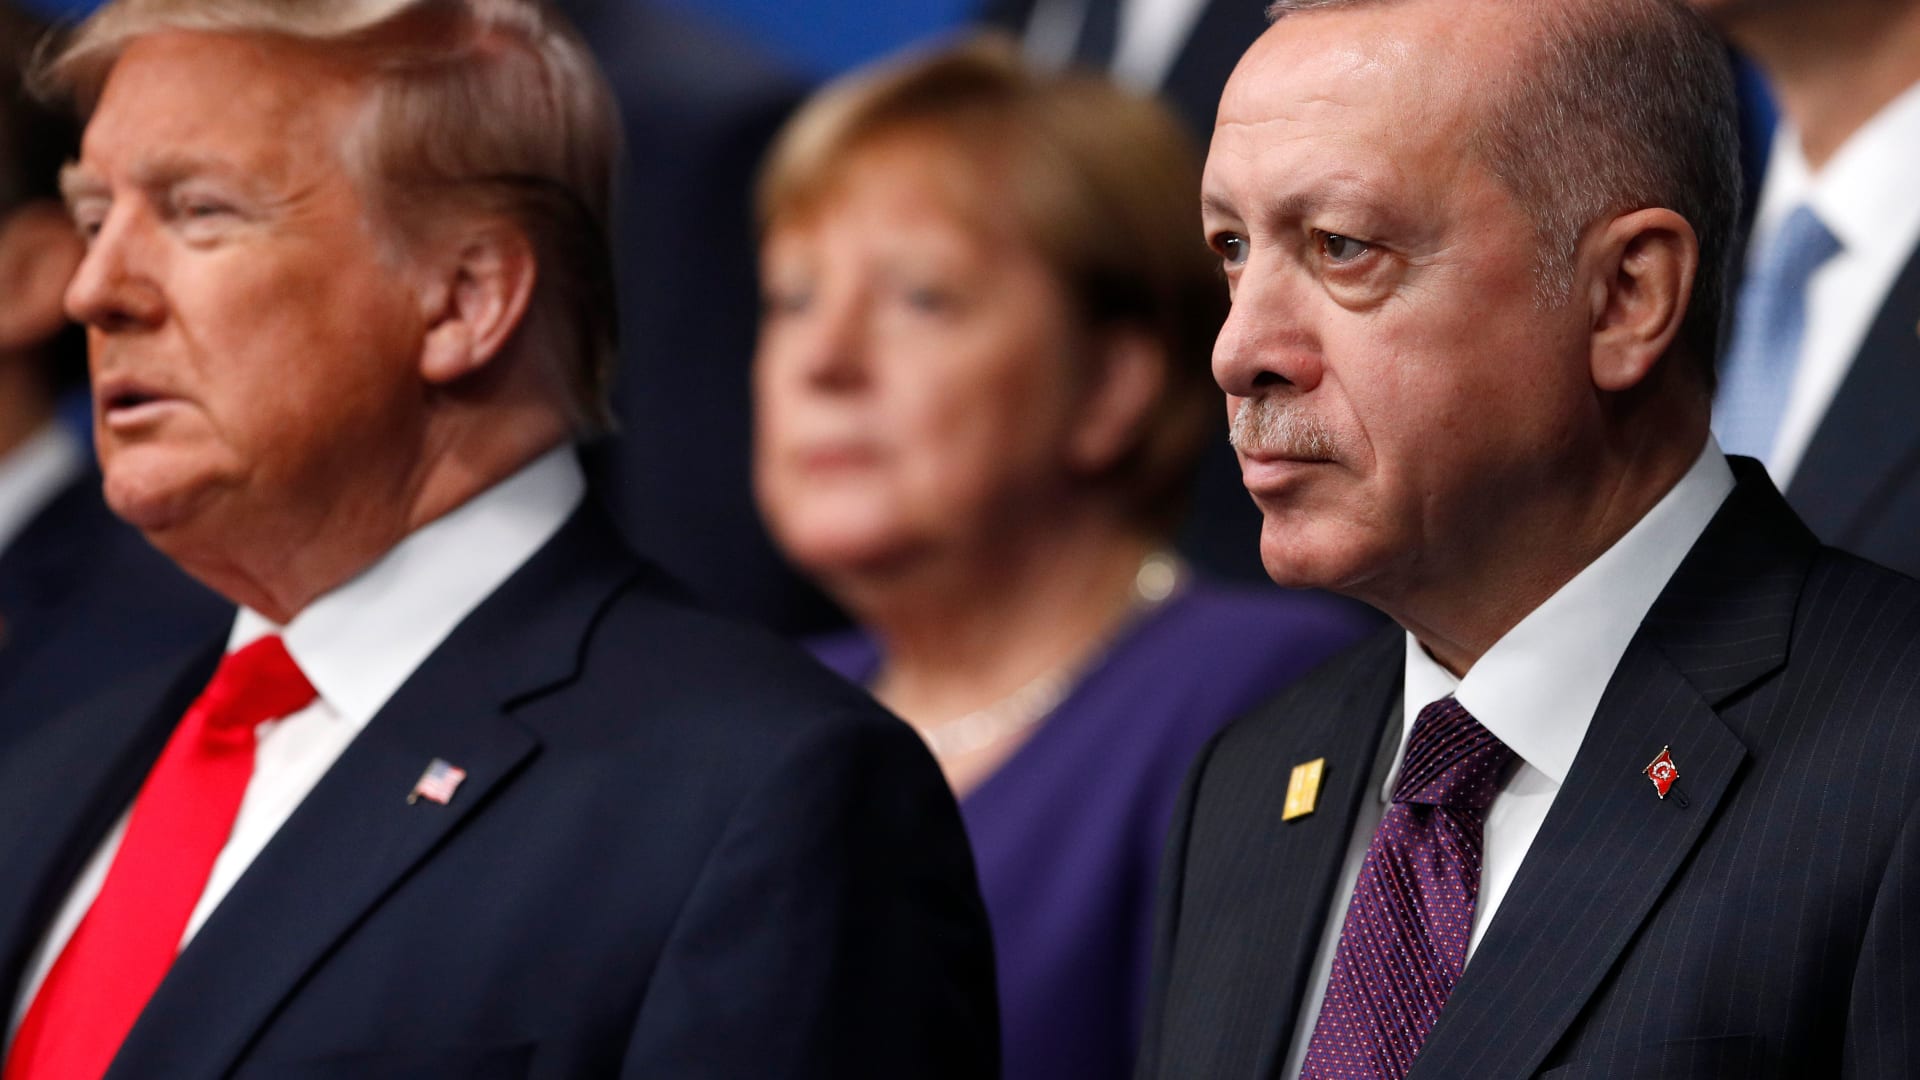 وزير دفاع تركيا يرد لـCNN على مزاعم "جرائم حرب" في سوريا